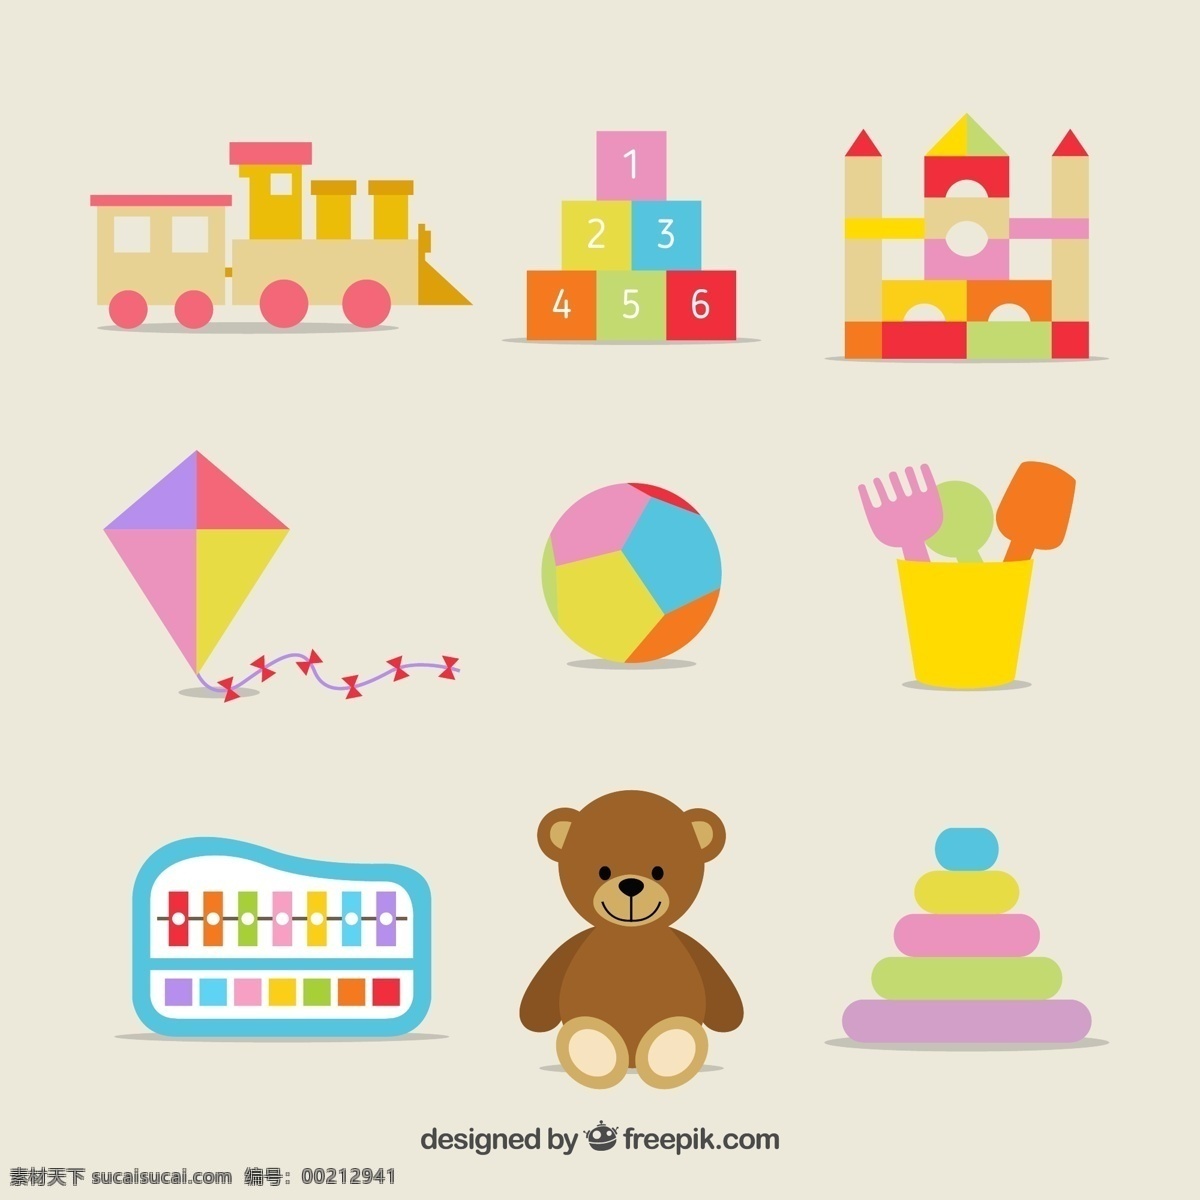 彩色玩具图标 玩具图标 玩具火车 积木 城堡 风筝 皮球 玩偶熊 玩具 图标